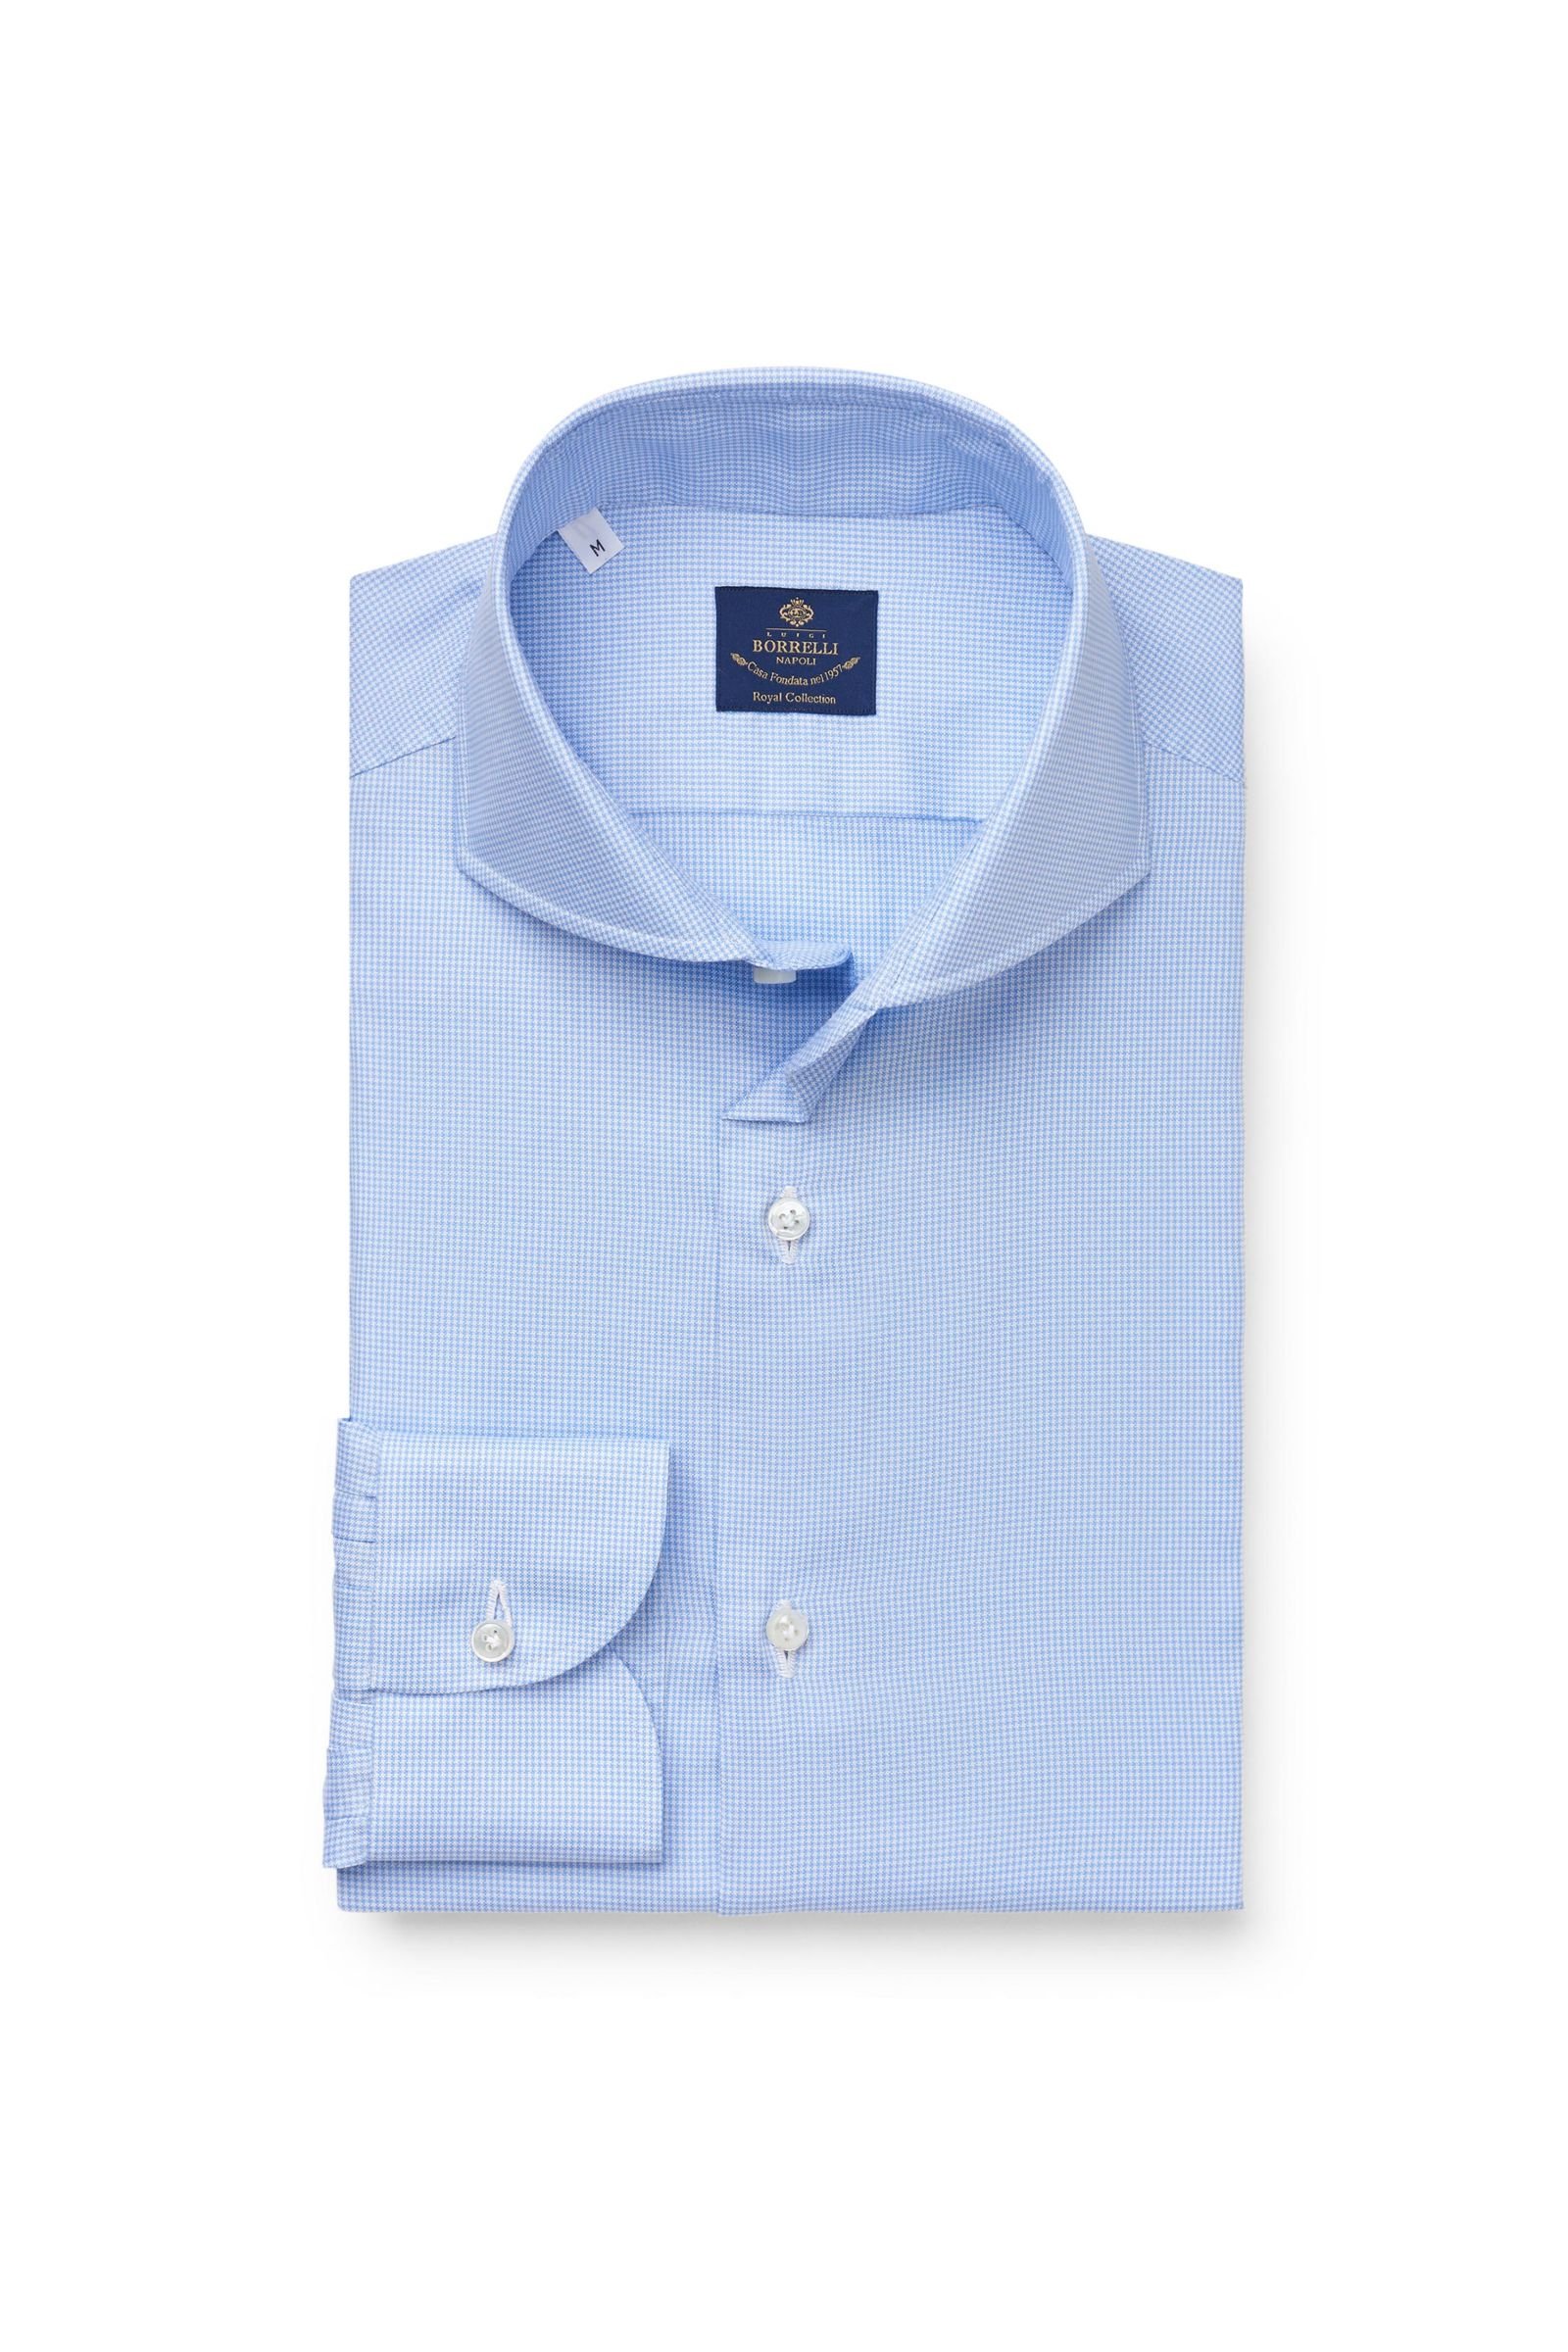 Business shirt 'Felice' shark collar light blue/white checked